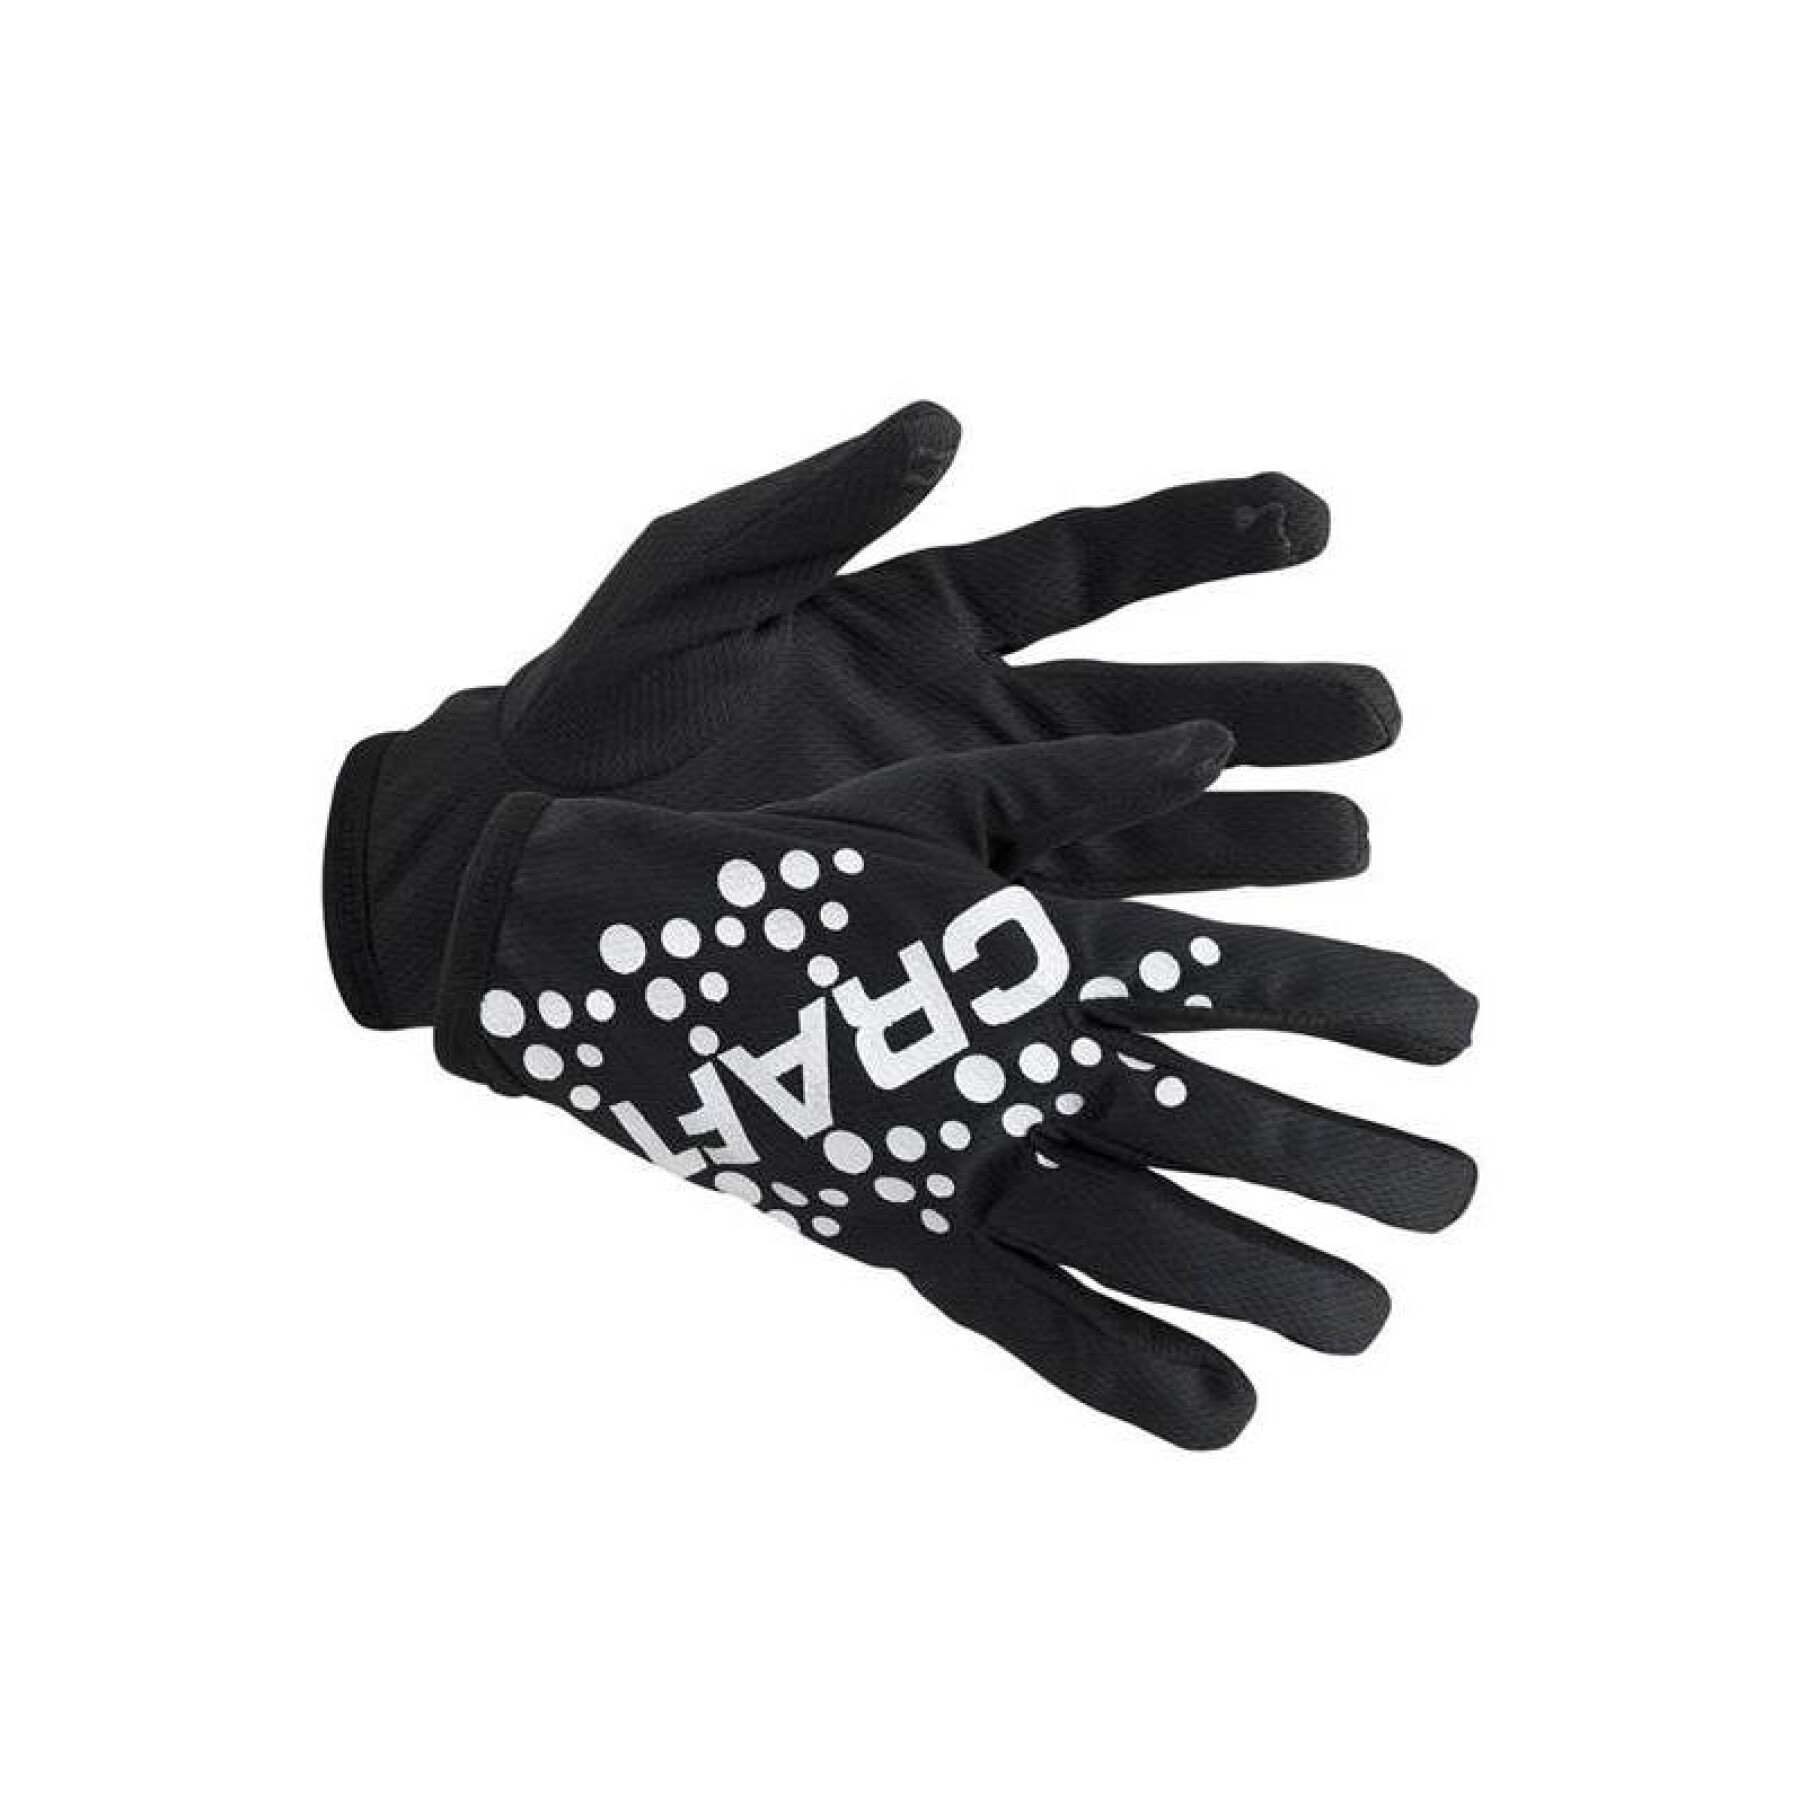 Thin running gloves Craft